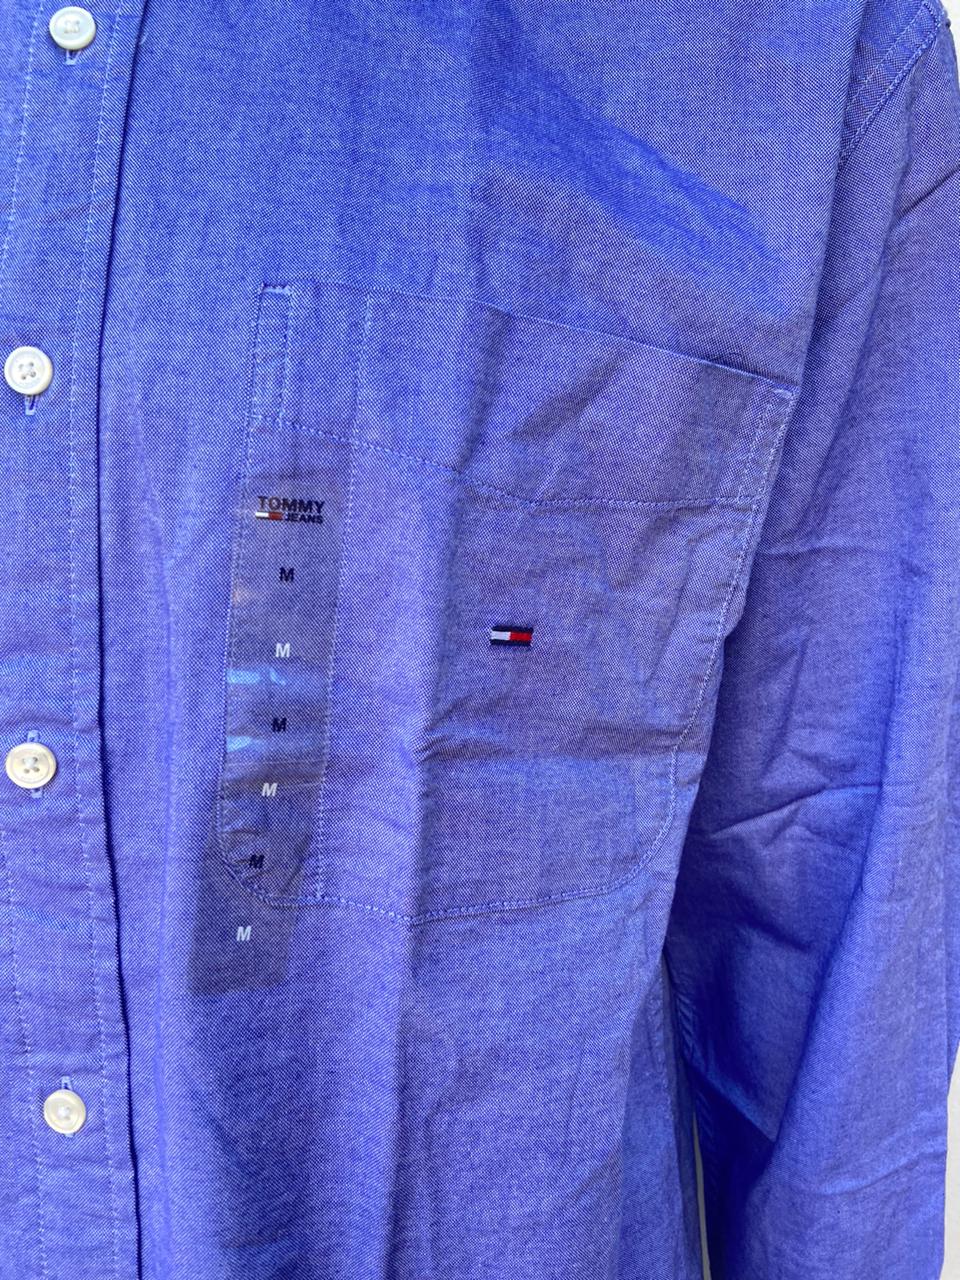 Camisa Tommy Hilfiger Jeans original, morado oscuro con aspecto degradado, mangas largas con pequeño logotipo de la marca en un lado.